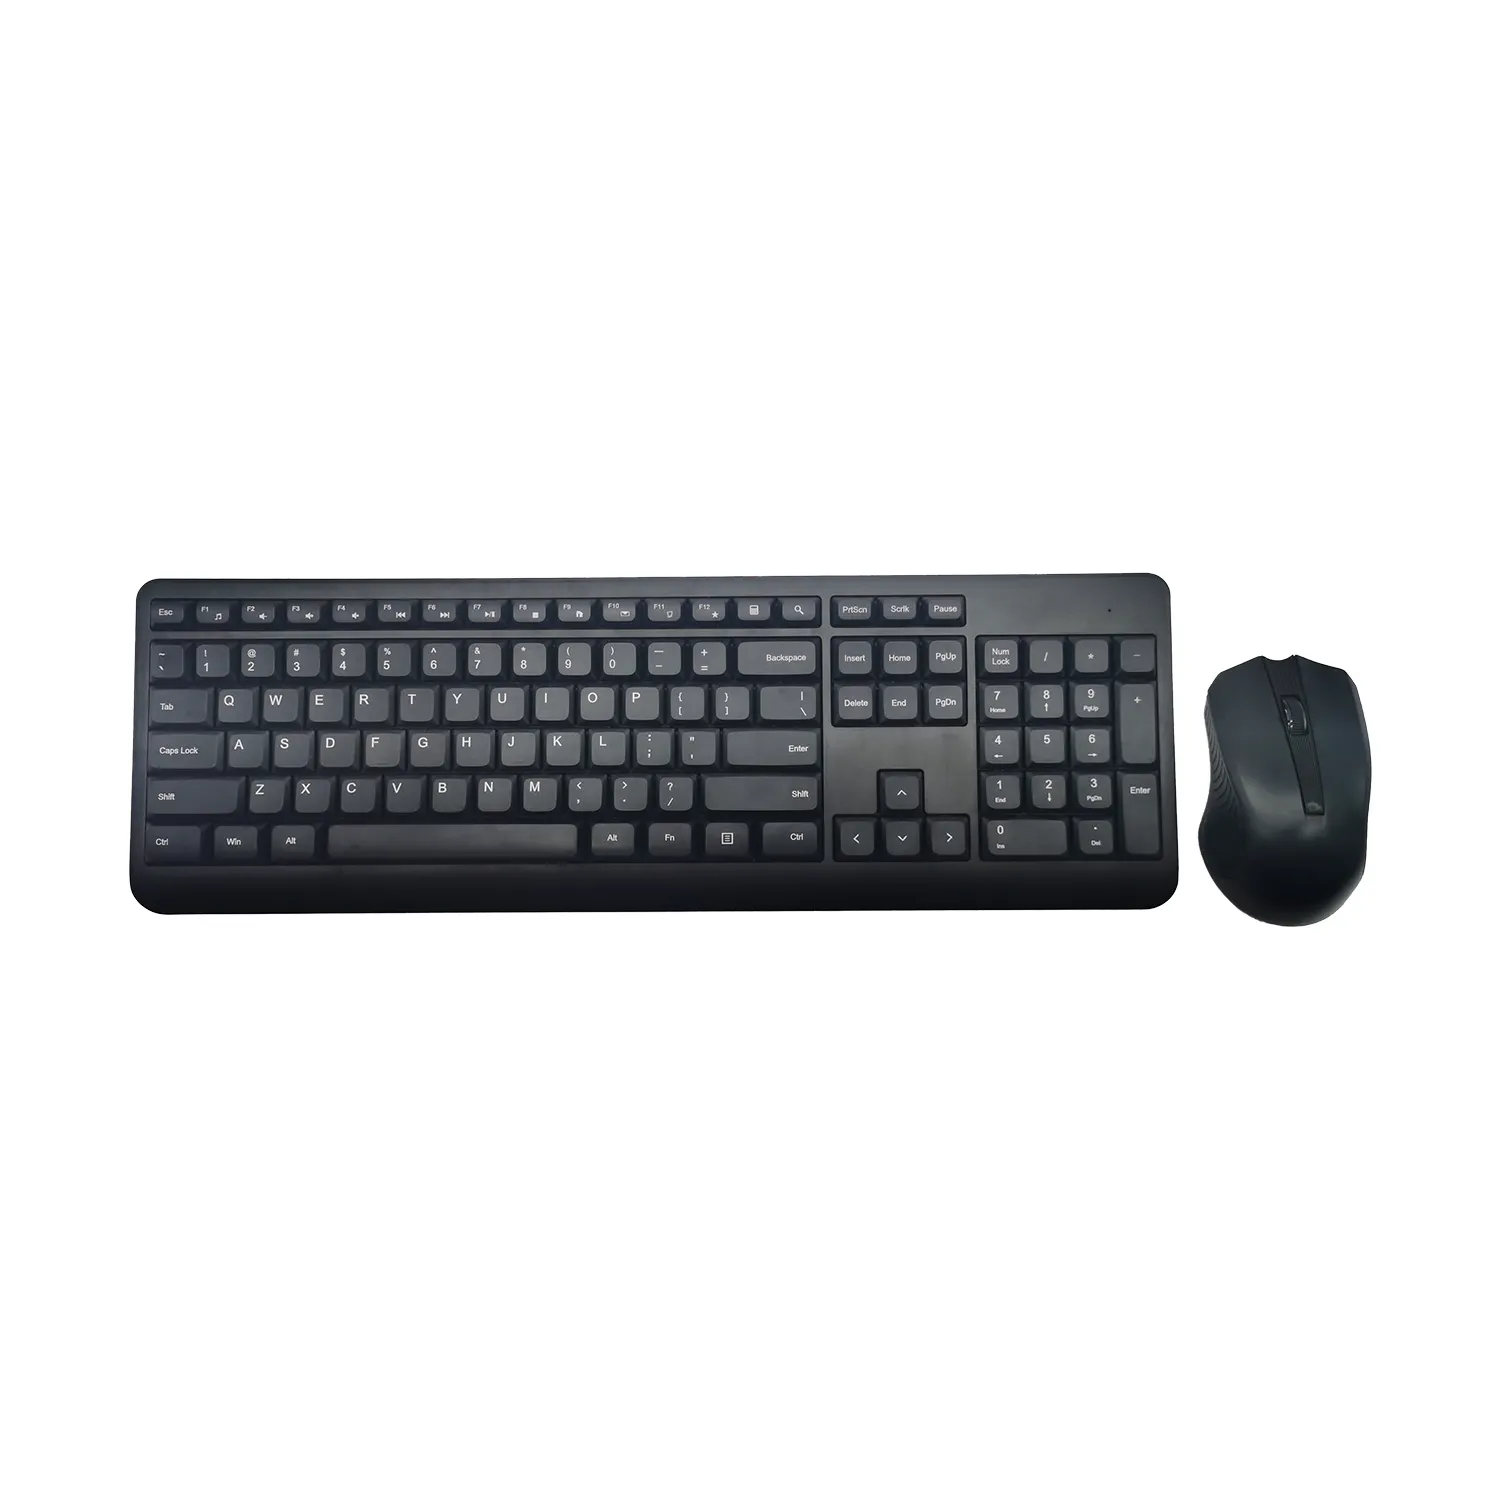 OEM kunden spezifisches Layout schlanke 106 Tasten 2.4G drahtlose Tastatur Maus kombinationen